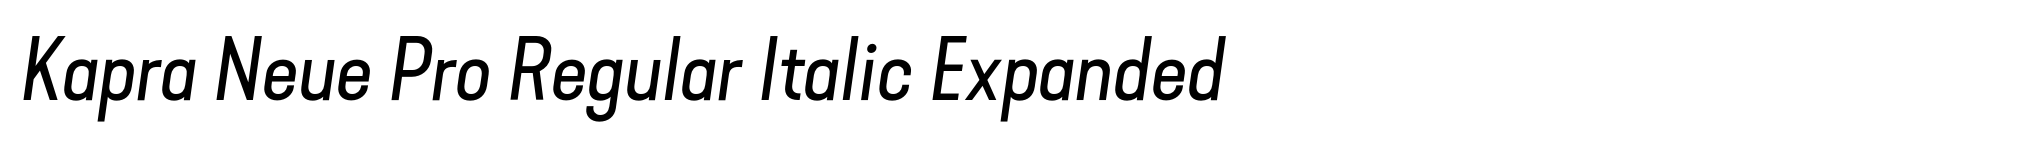 Kapra Neue Pro Regular Italic Expanded image